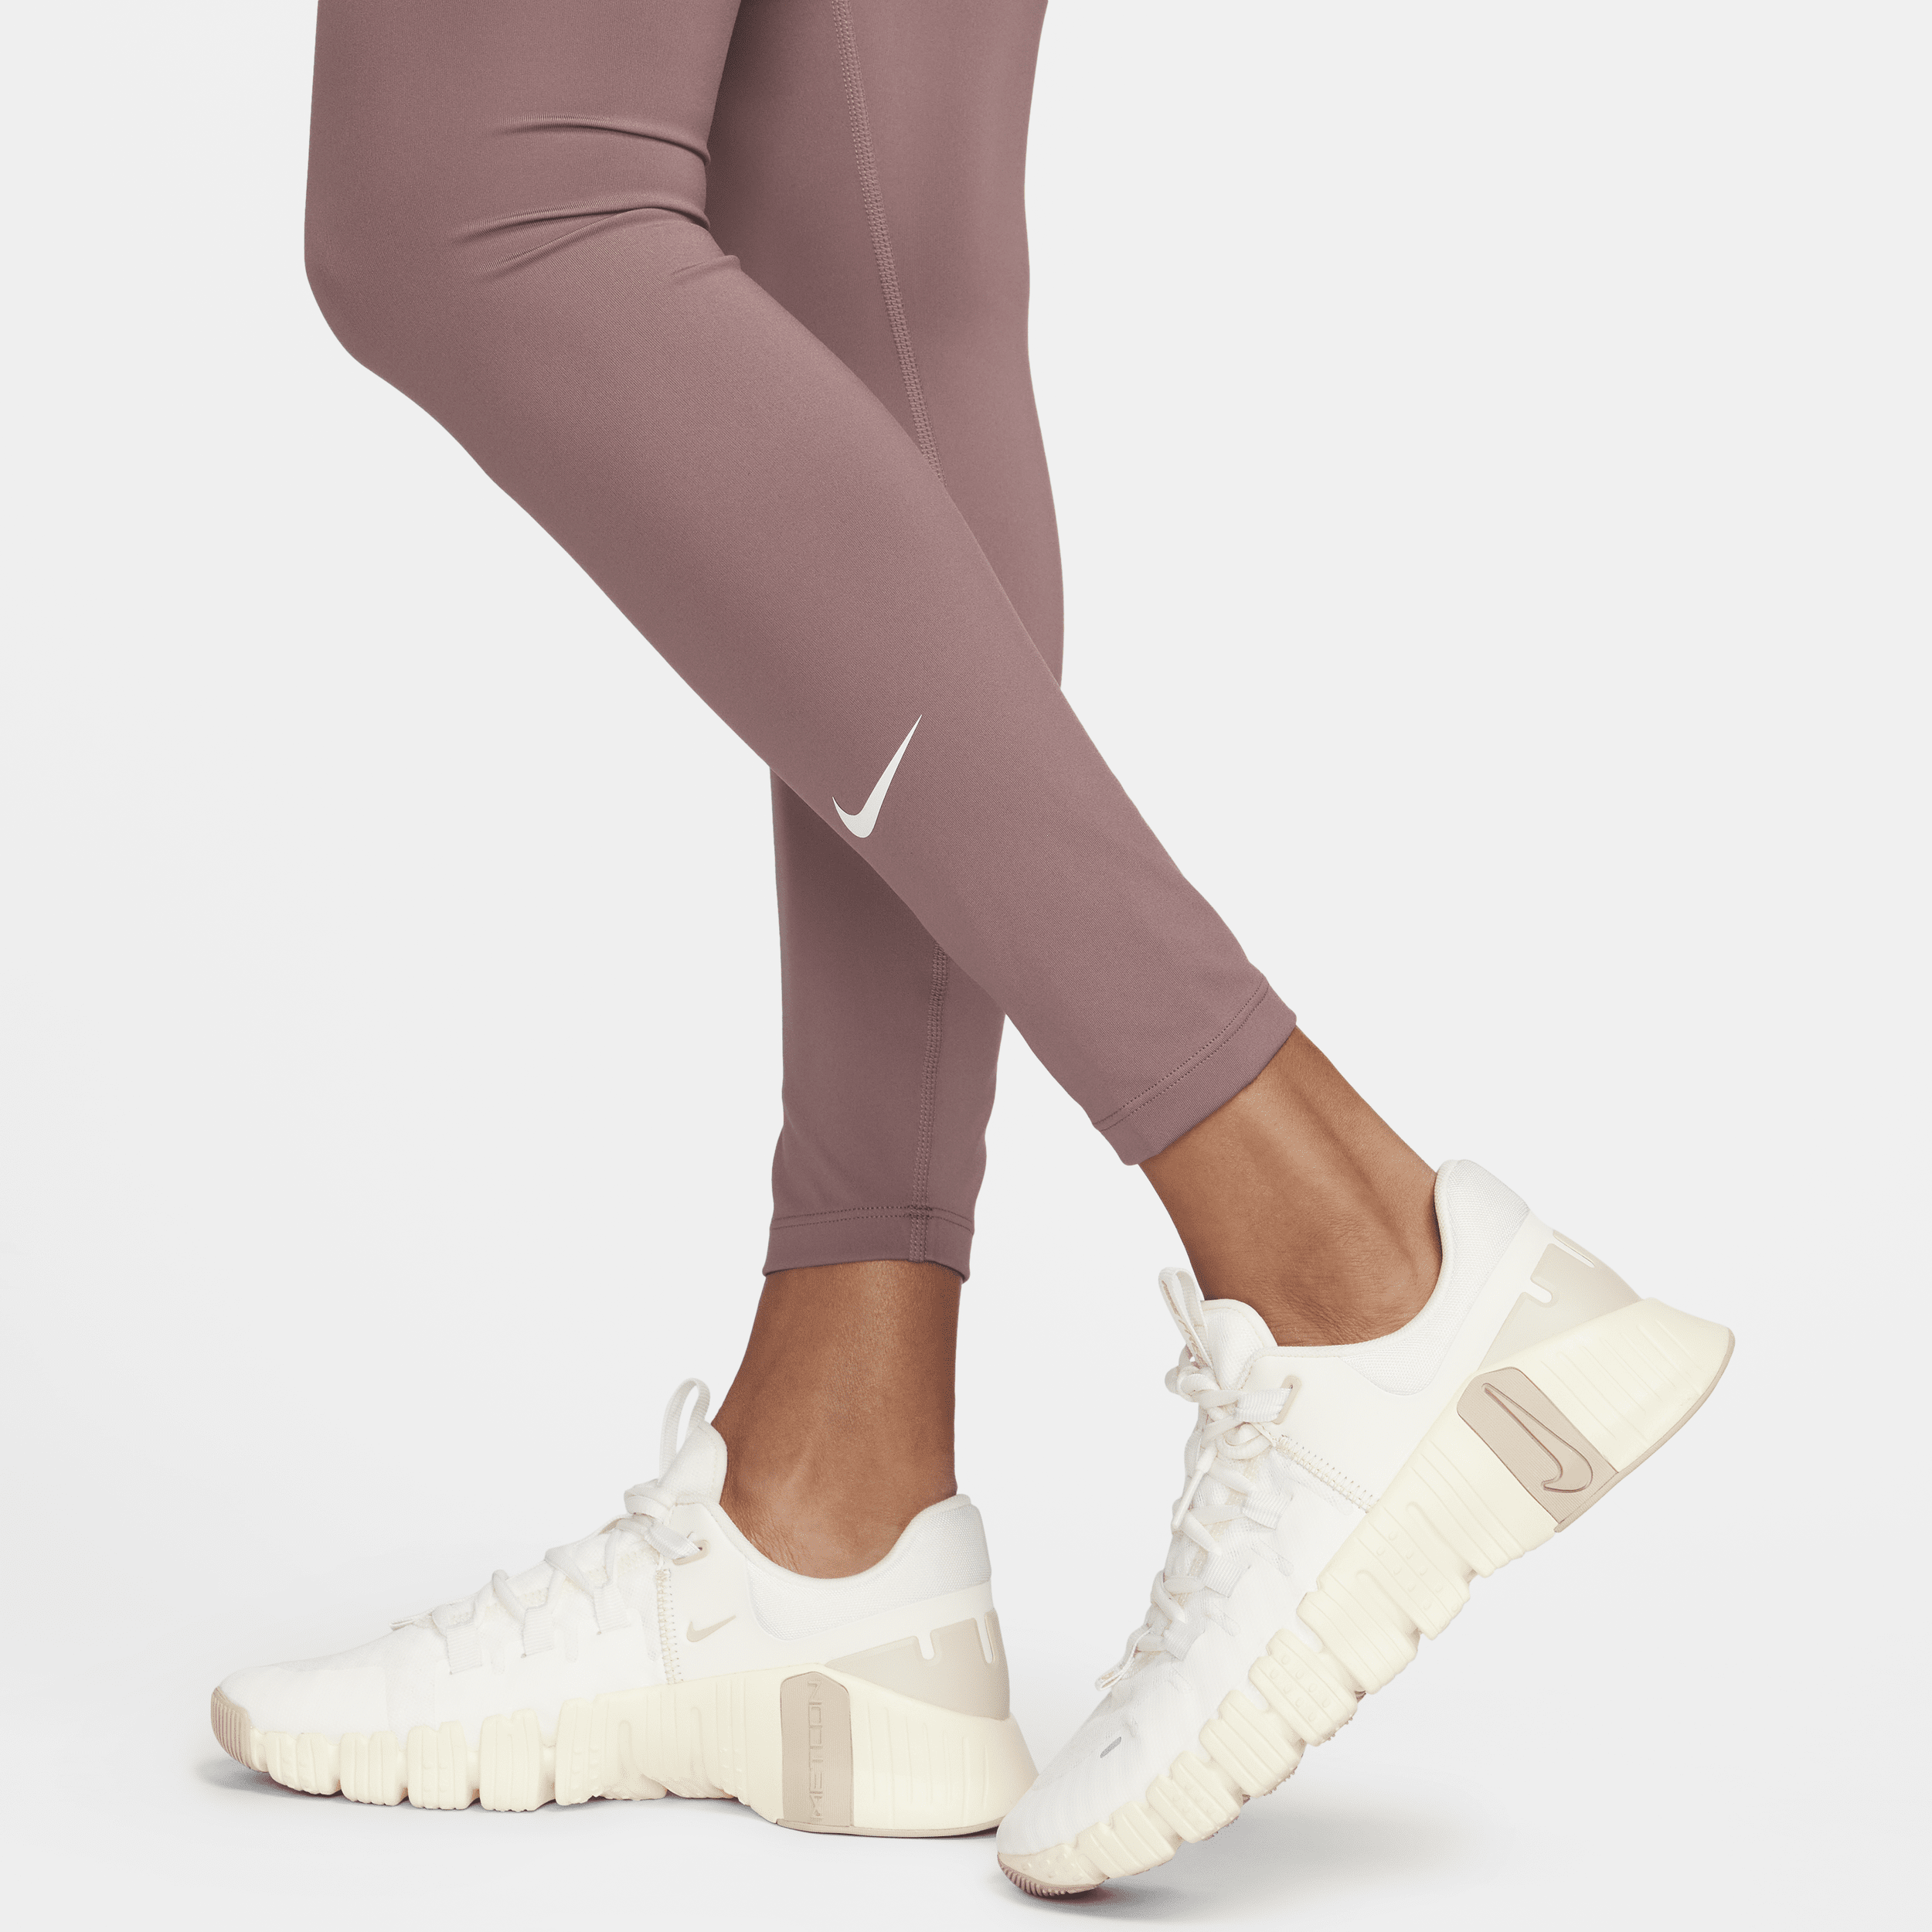 Nike One Legging met halfhoge taille voor dames